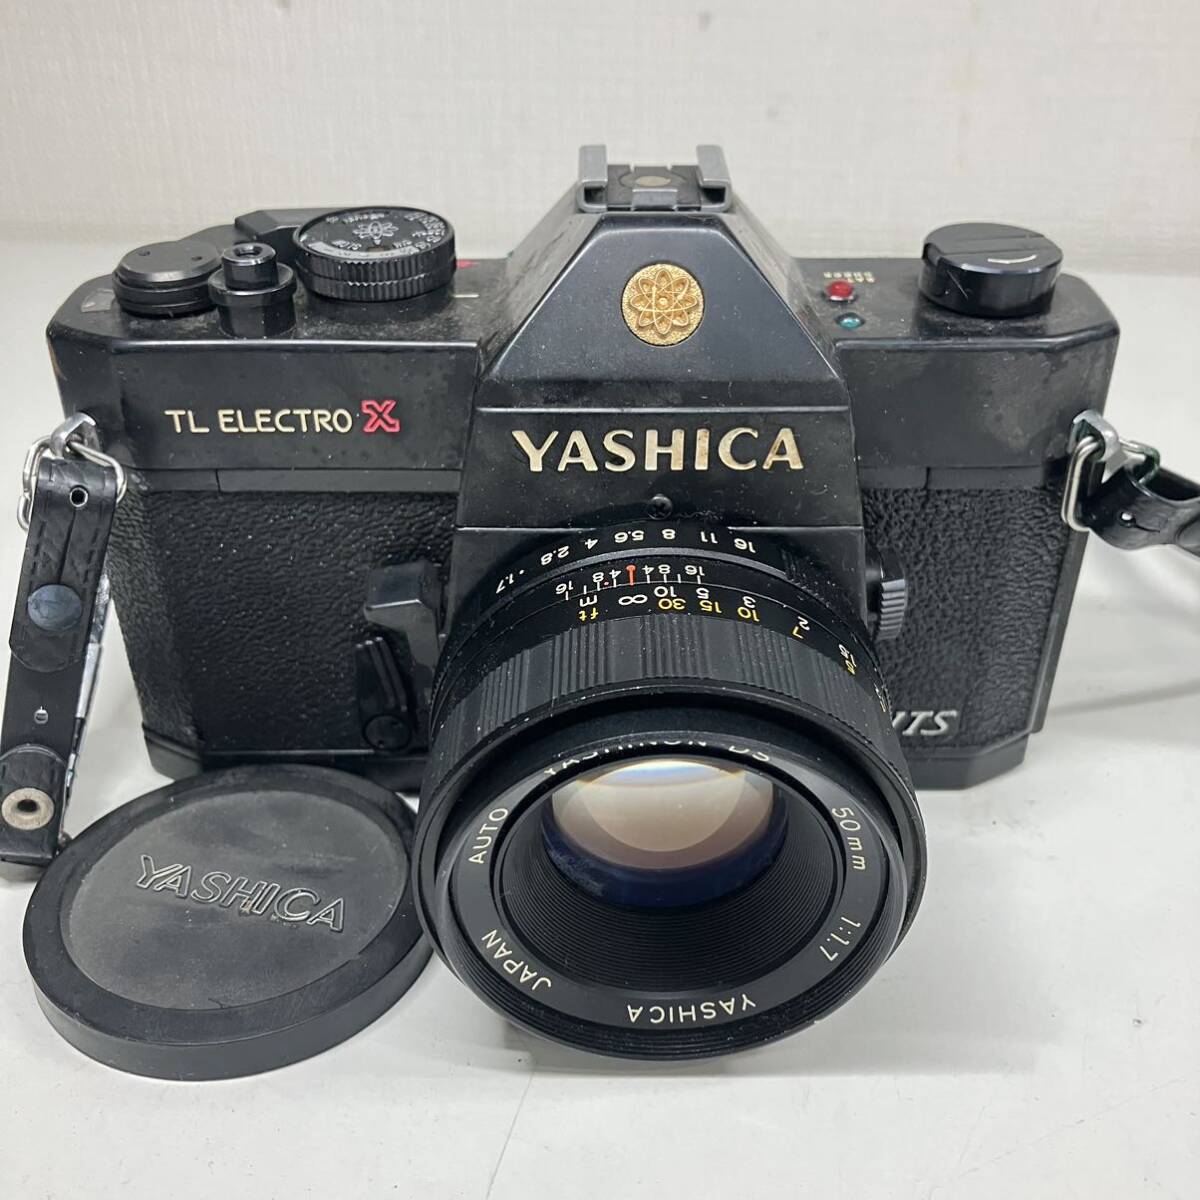 1円〜 4T YASHICA ヤシカ フィルム一眼レフカメラ TL ELECTRO X 40108216 レンズ YASHINON-DS 50mm フィルムカメラ 動作未確認 レトロの画像1